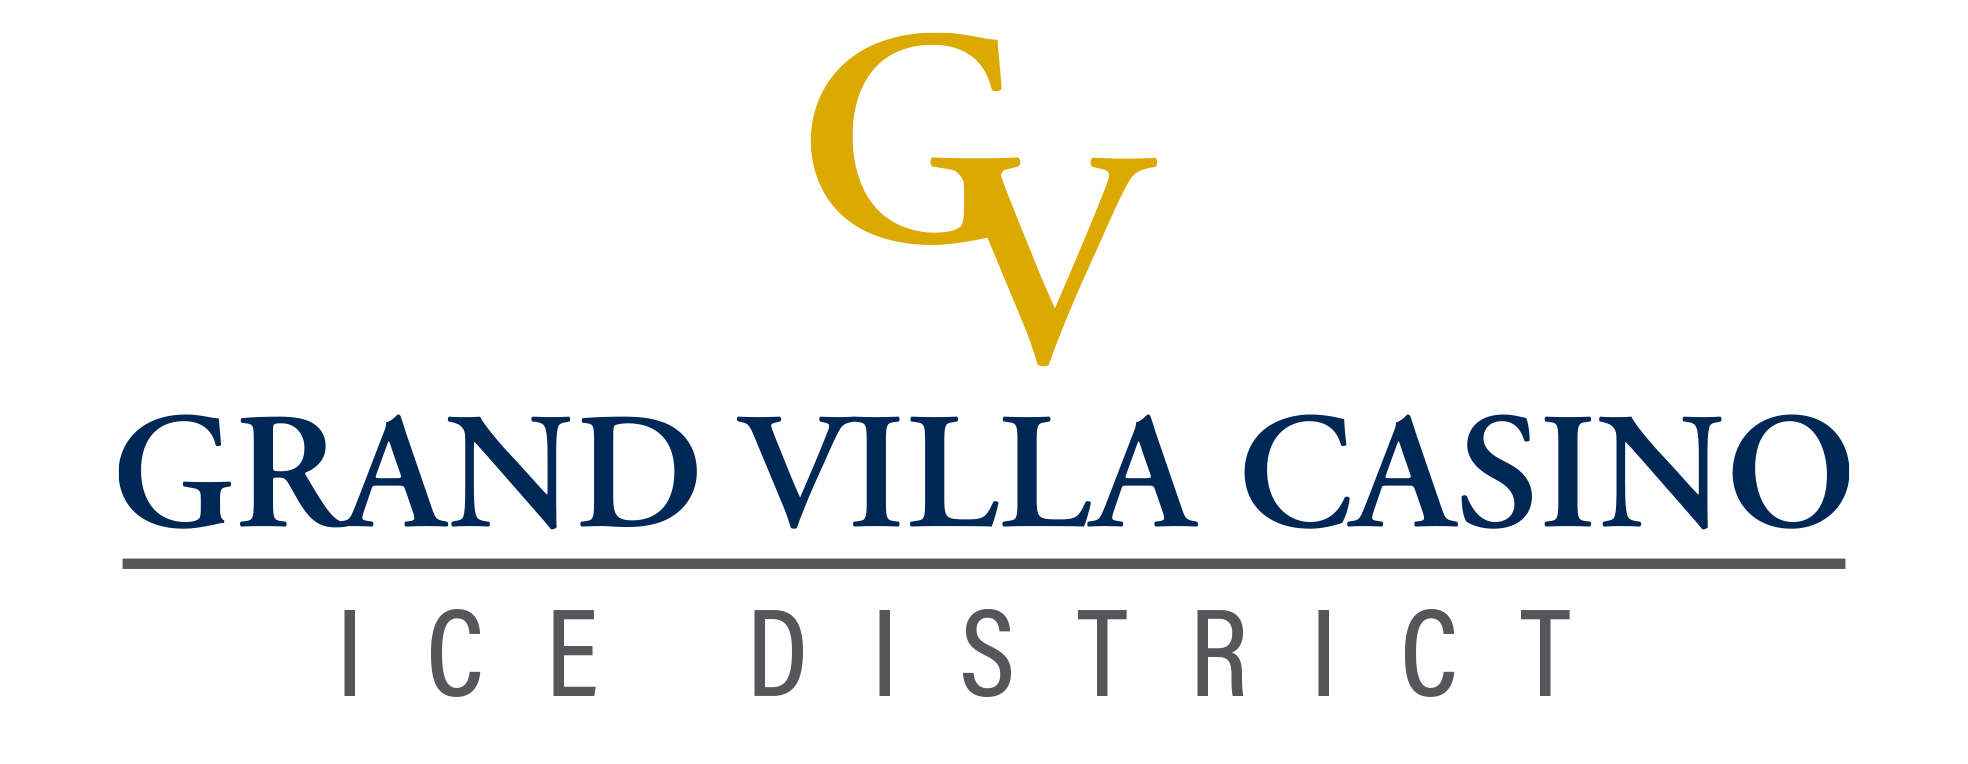 Grand Villa Casino Ice District logo